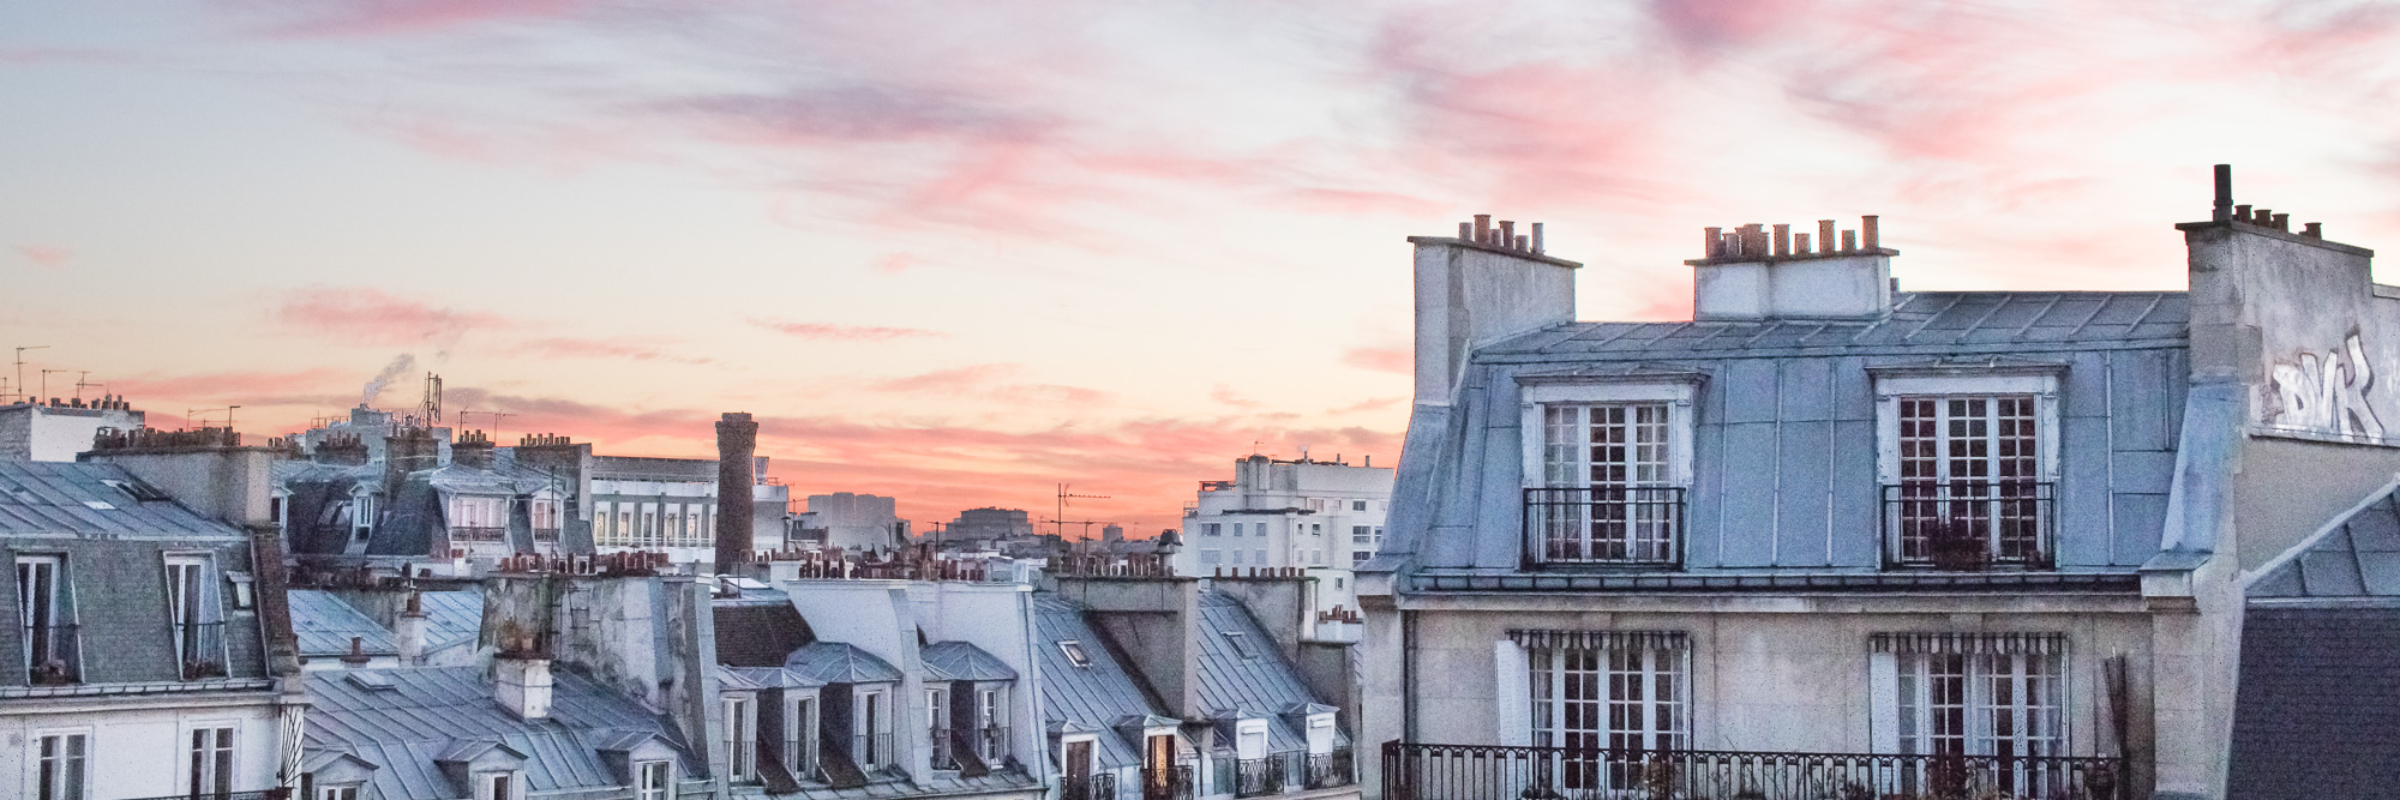 Paris,France_Louvre_airbnb__12_30_2016_141_edits